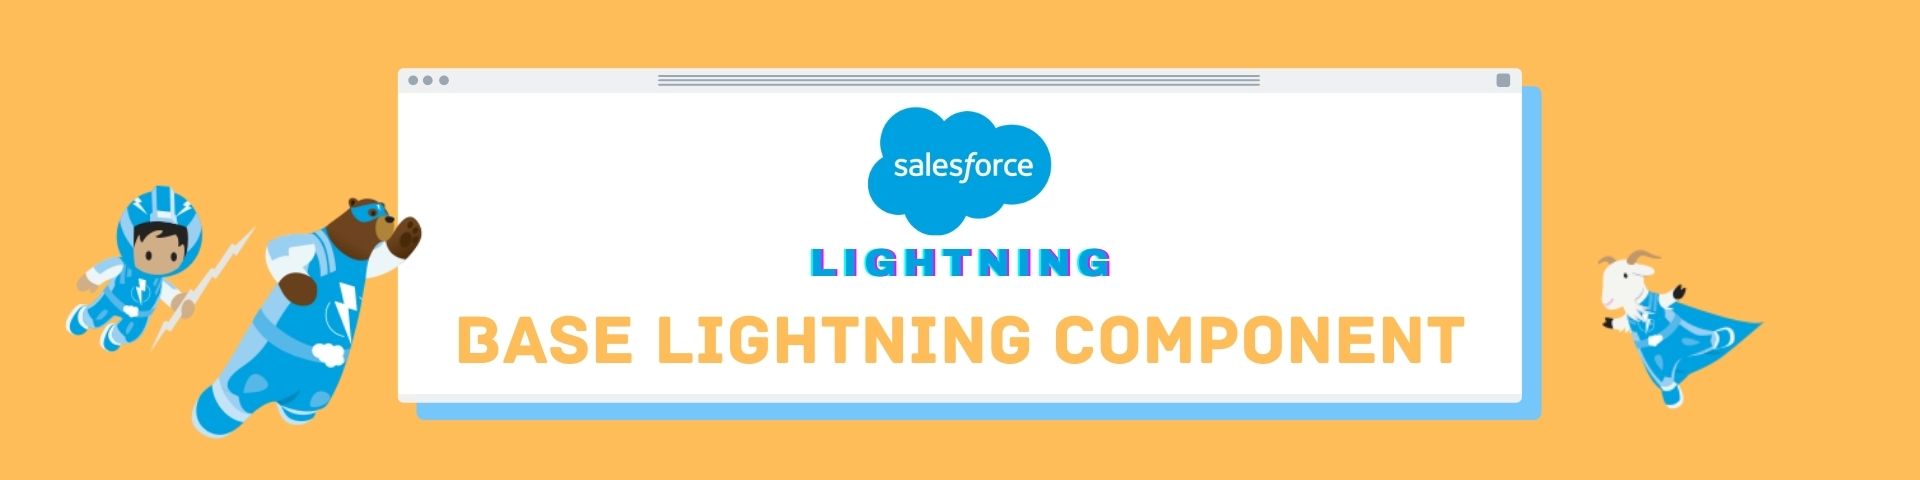 Salesforce Lightning Base lightning component